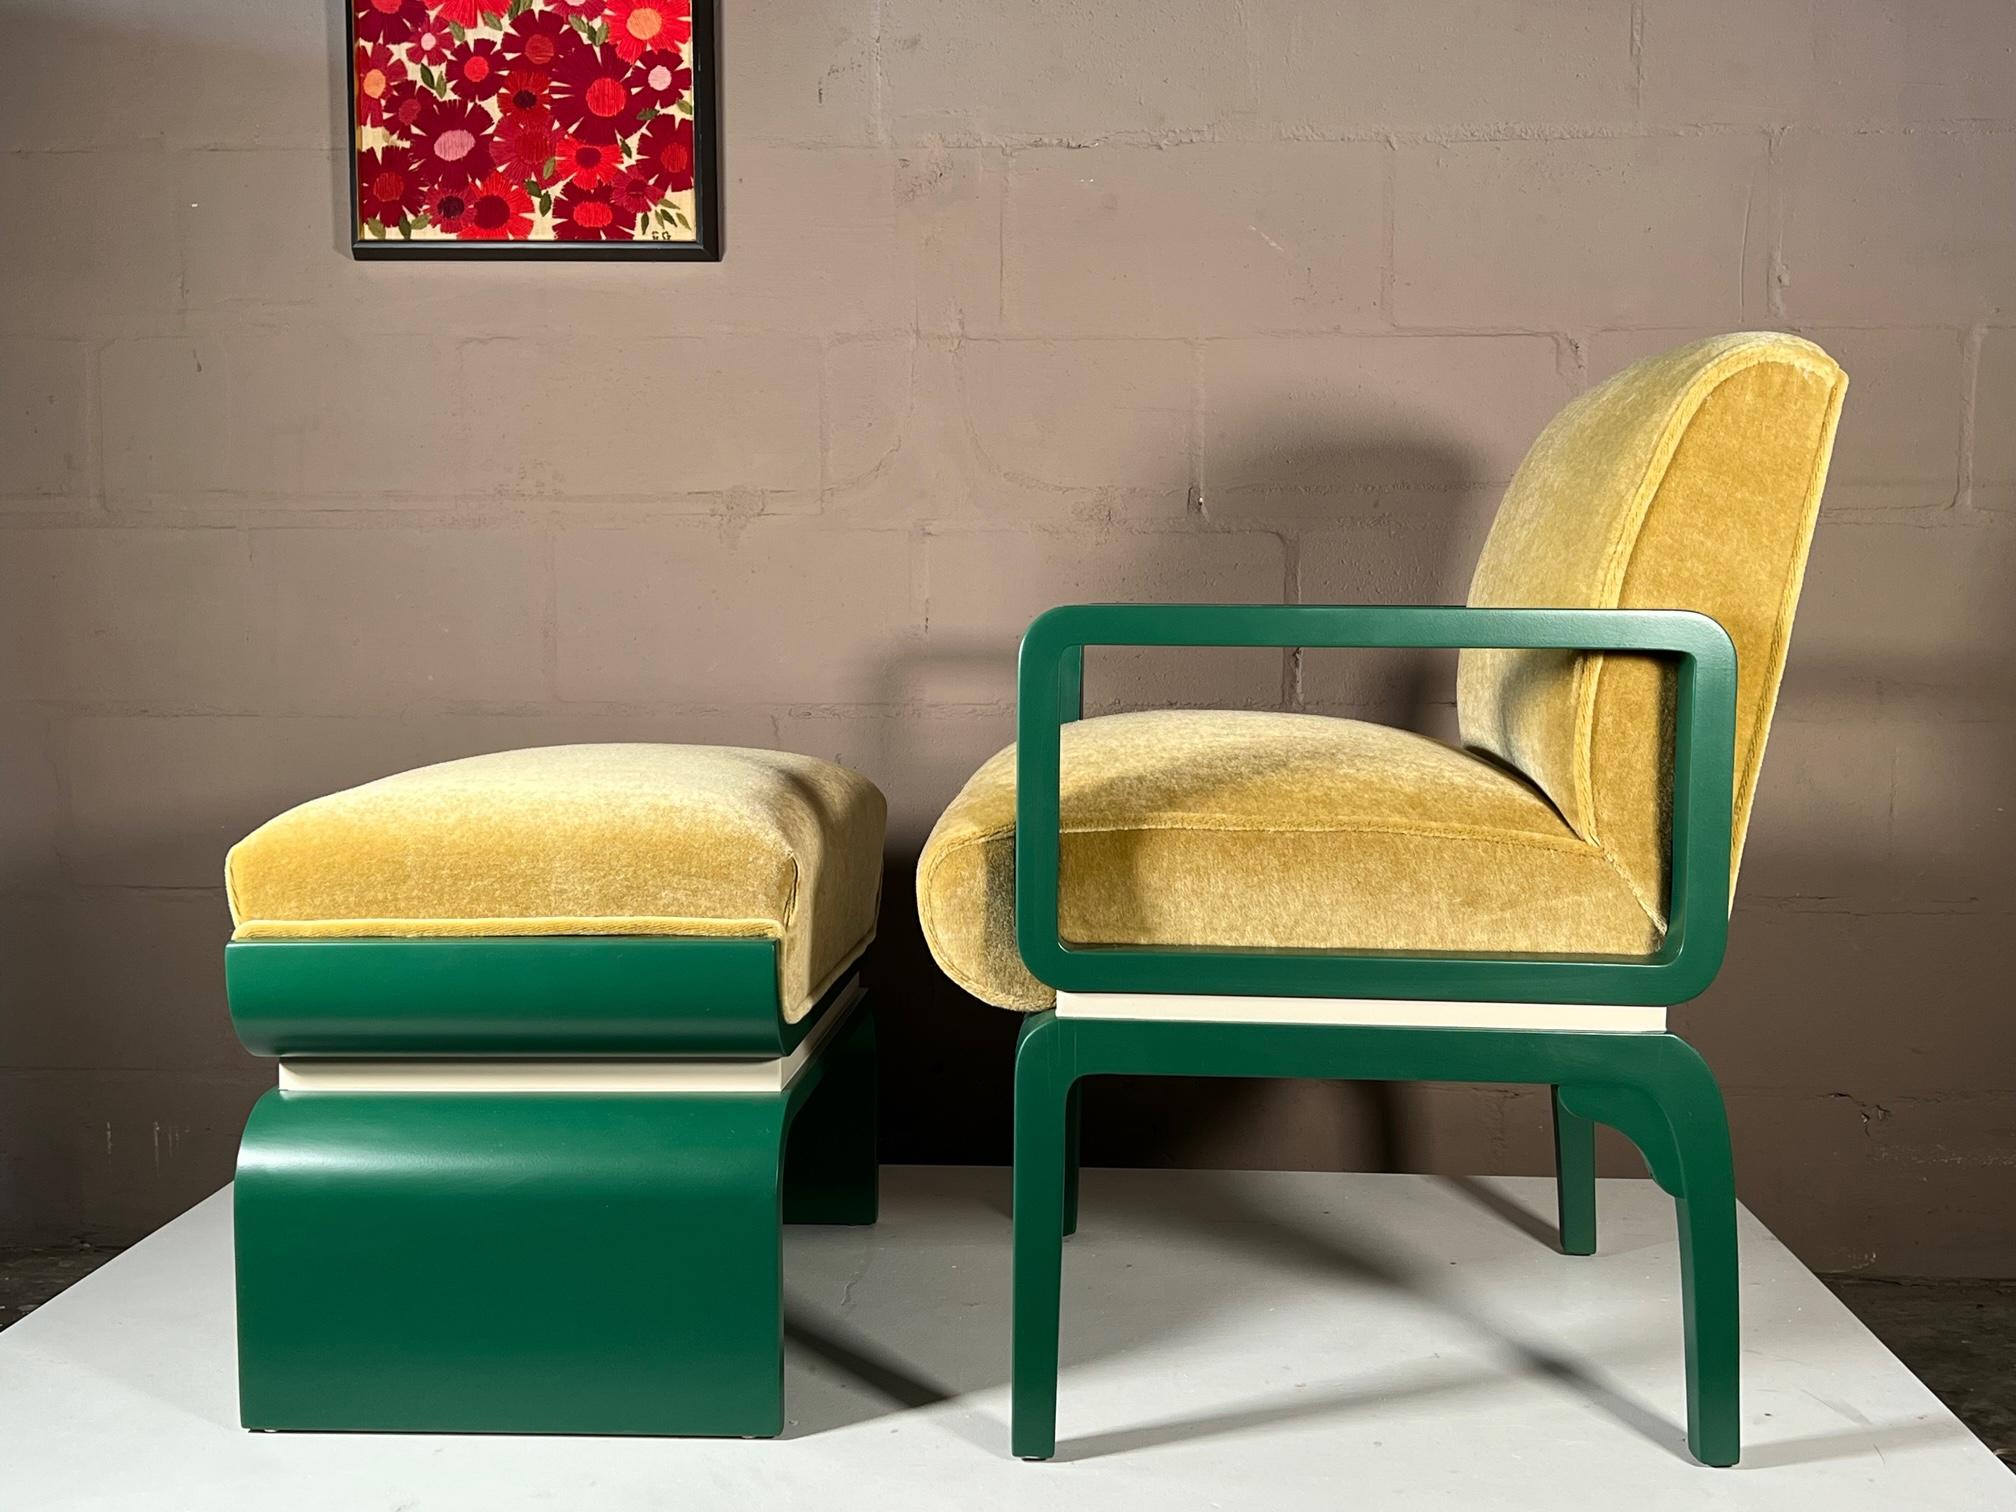 Fauteuil et ottoman inhabituels et rares, conçus par Donald Deskey pour Valentine-Seaver Co, vers les années 1930. Entièrement restauré et retapissé en mohair. La chaise mesure 22,5 